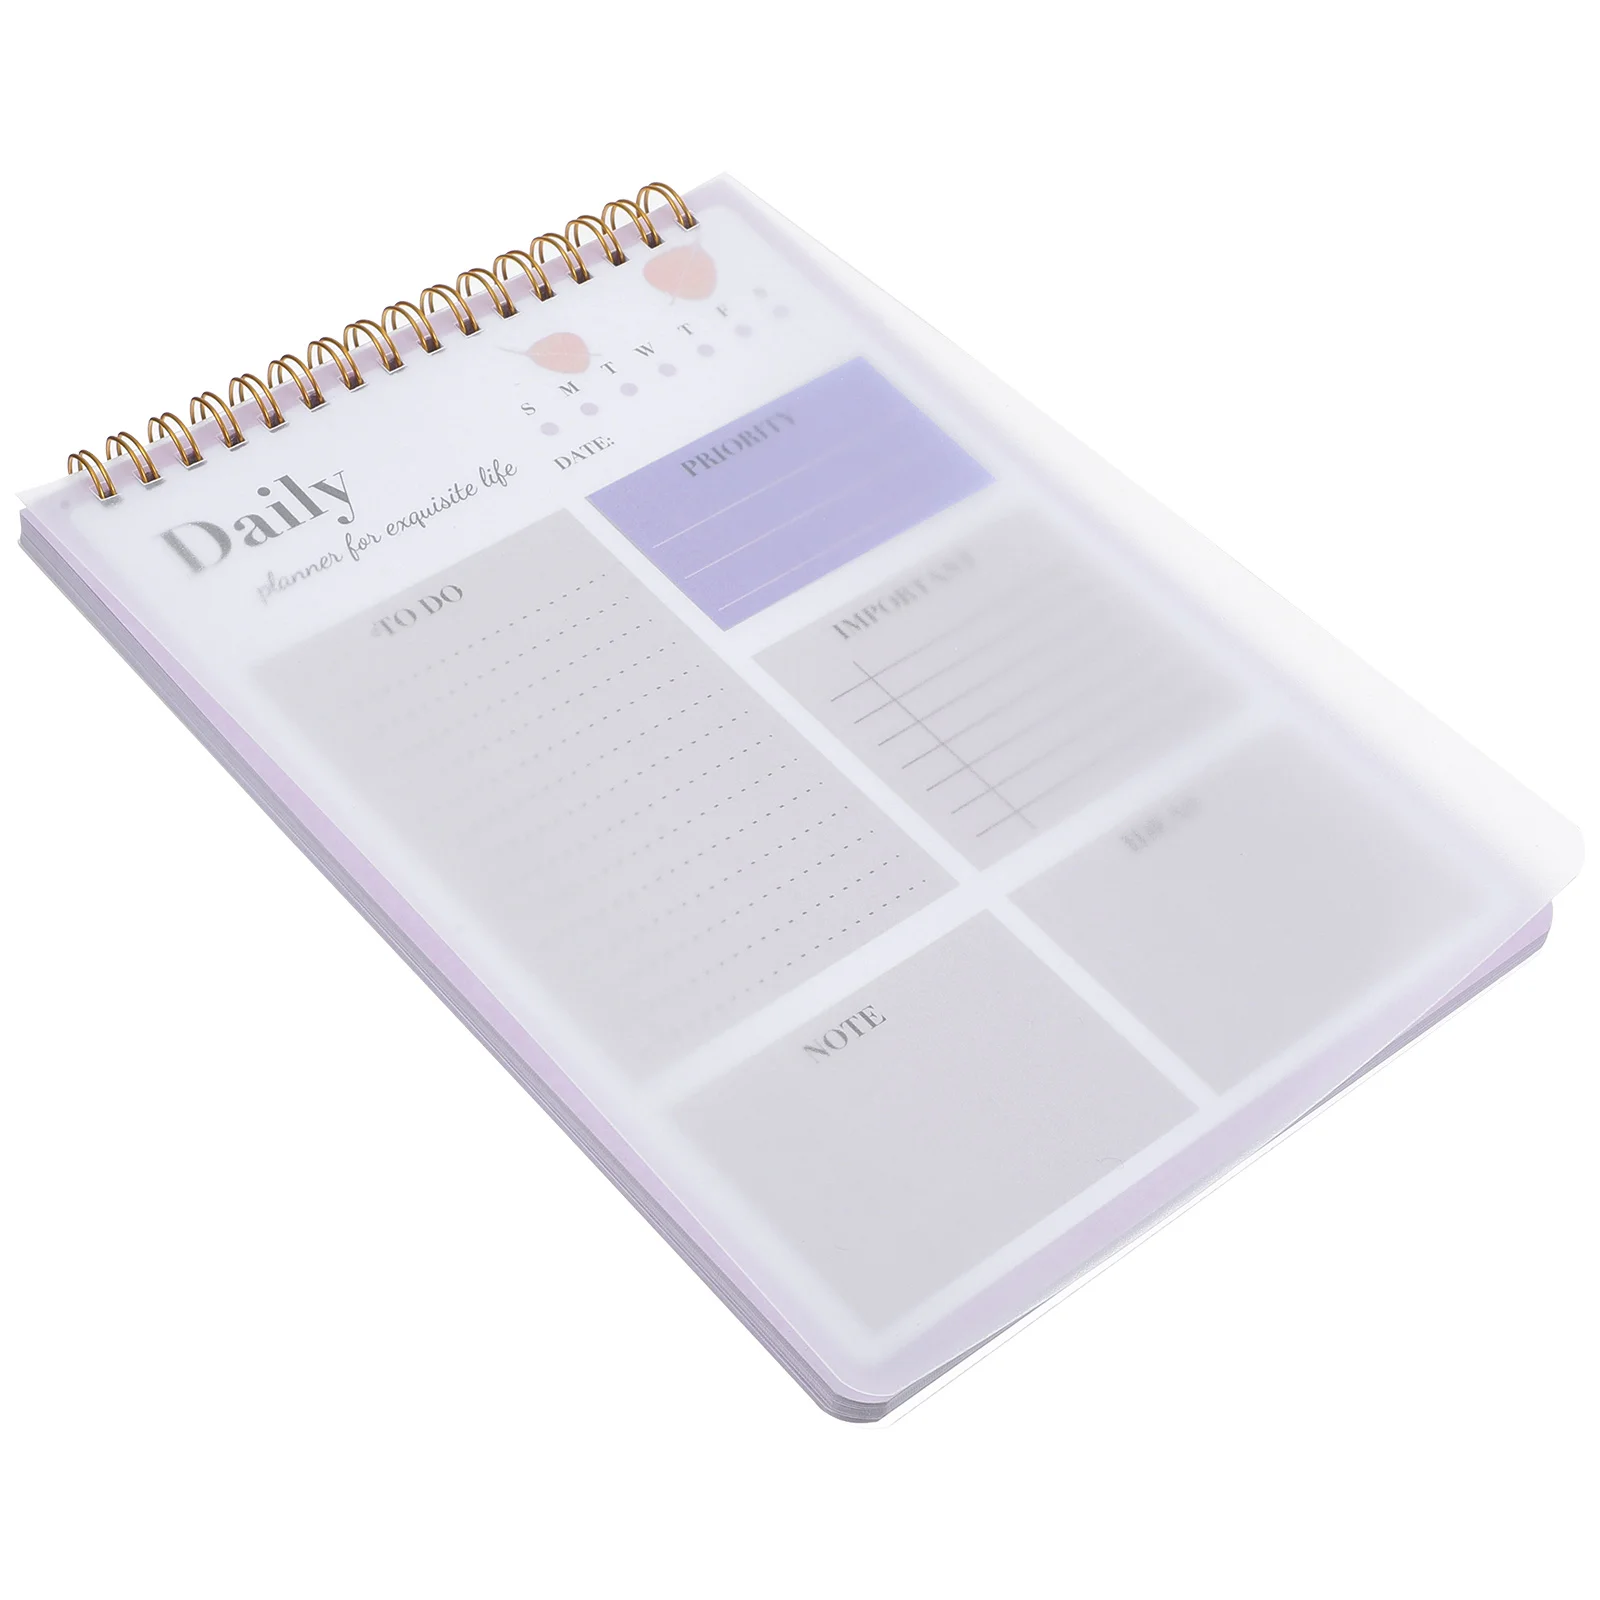 

Блокнот Learher, планировщик расписания, календарь, закладки для руководства, бумажная тетрадь для учителей начальной школы